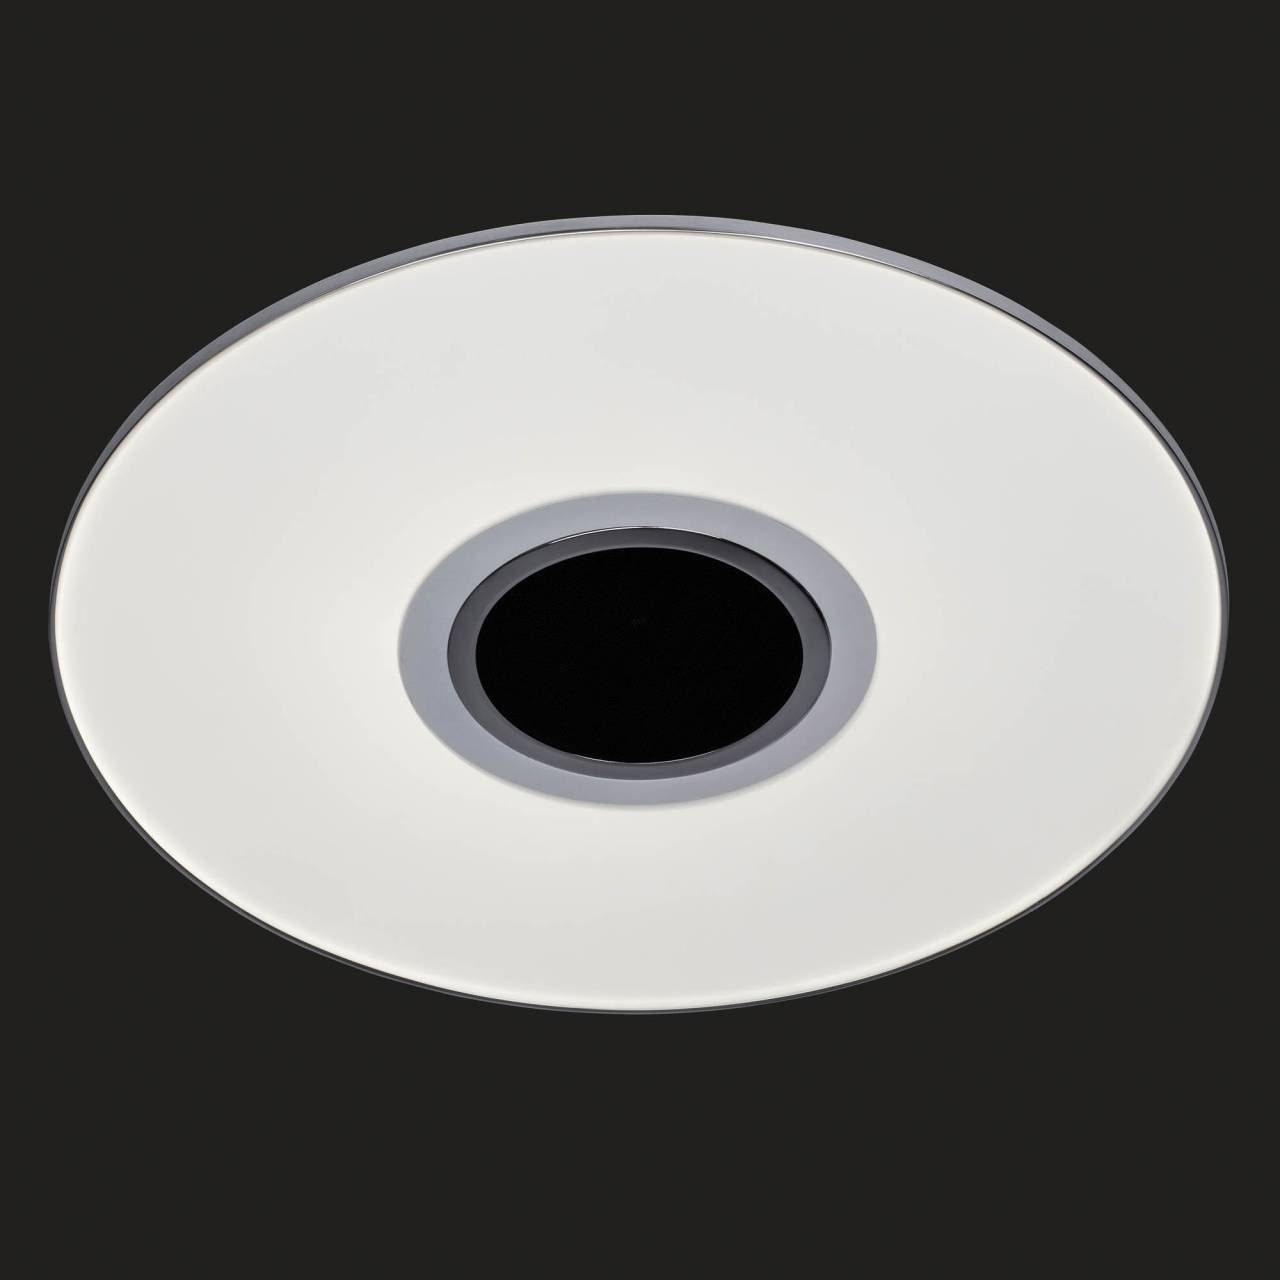 cm, Panel weiß/chrom LED AEG CCT, 2200lm, 49 LED dimmbar, Farbwechsler, Lautsprecher, Tonic, Fernbedienung, Ø wechselbar,